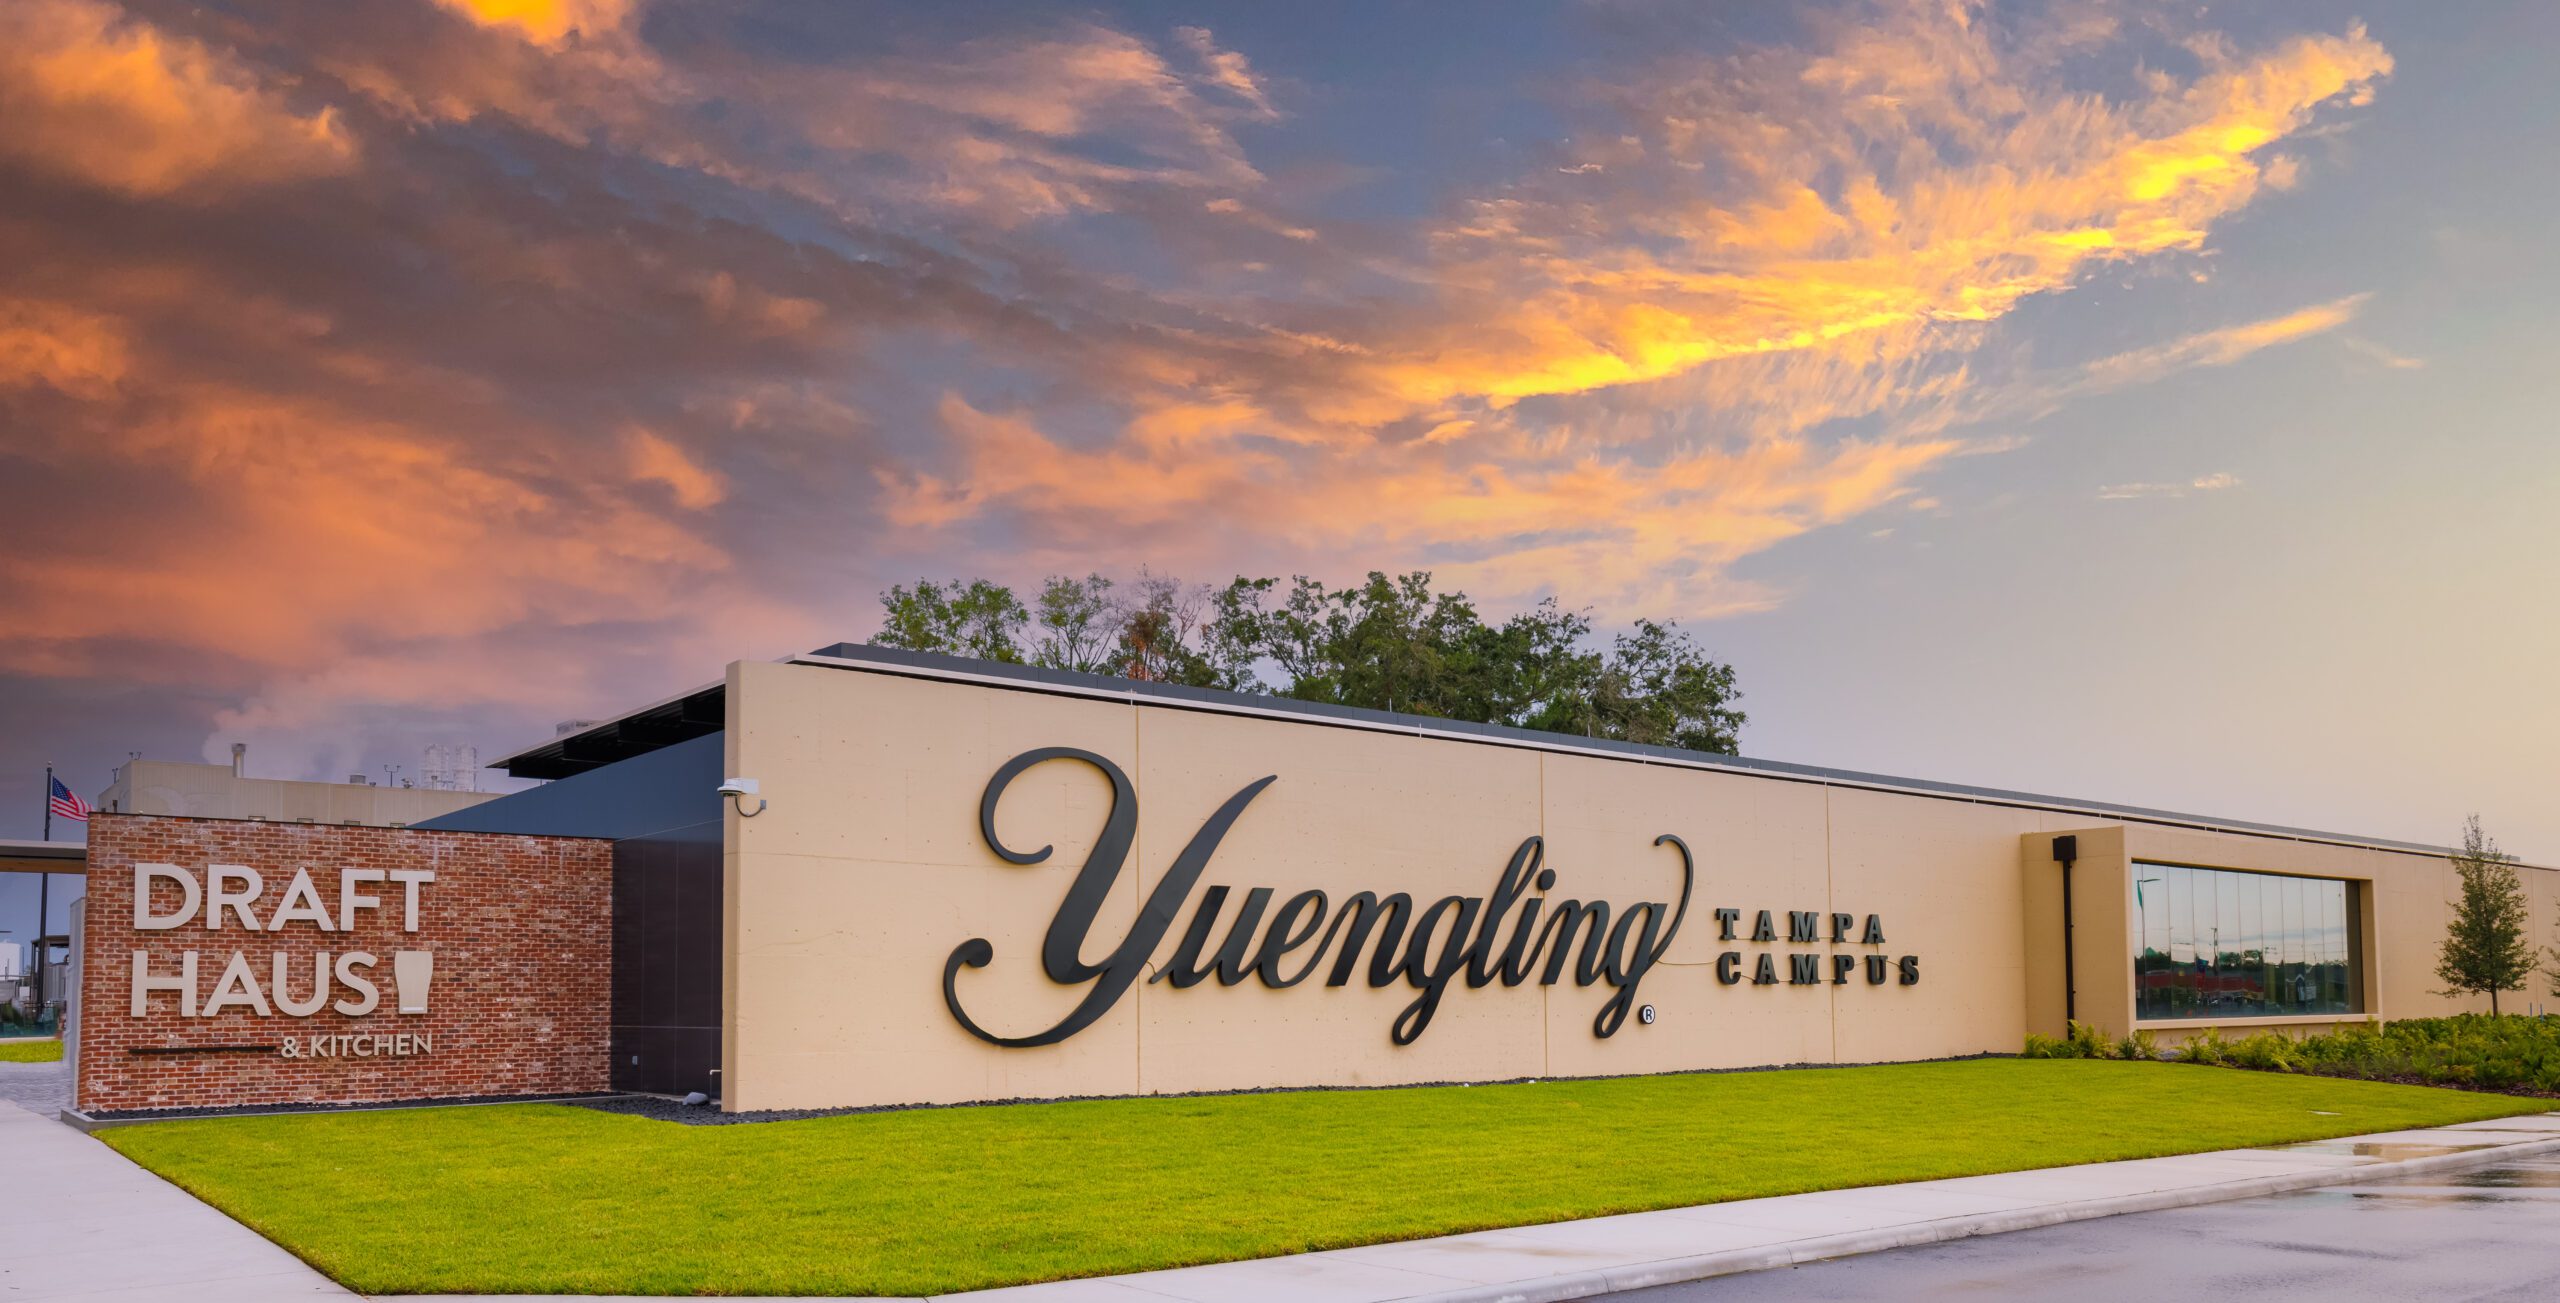 Yuengling Draft Haus & Kitchen Tampa – #1 For Beer Aficionados